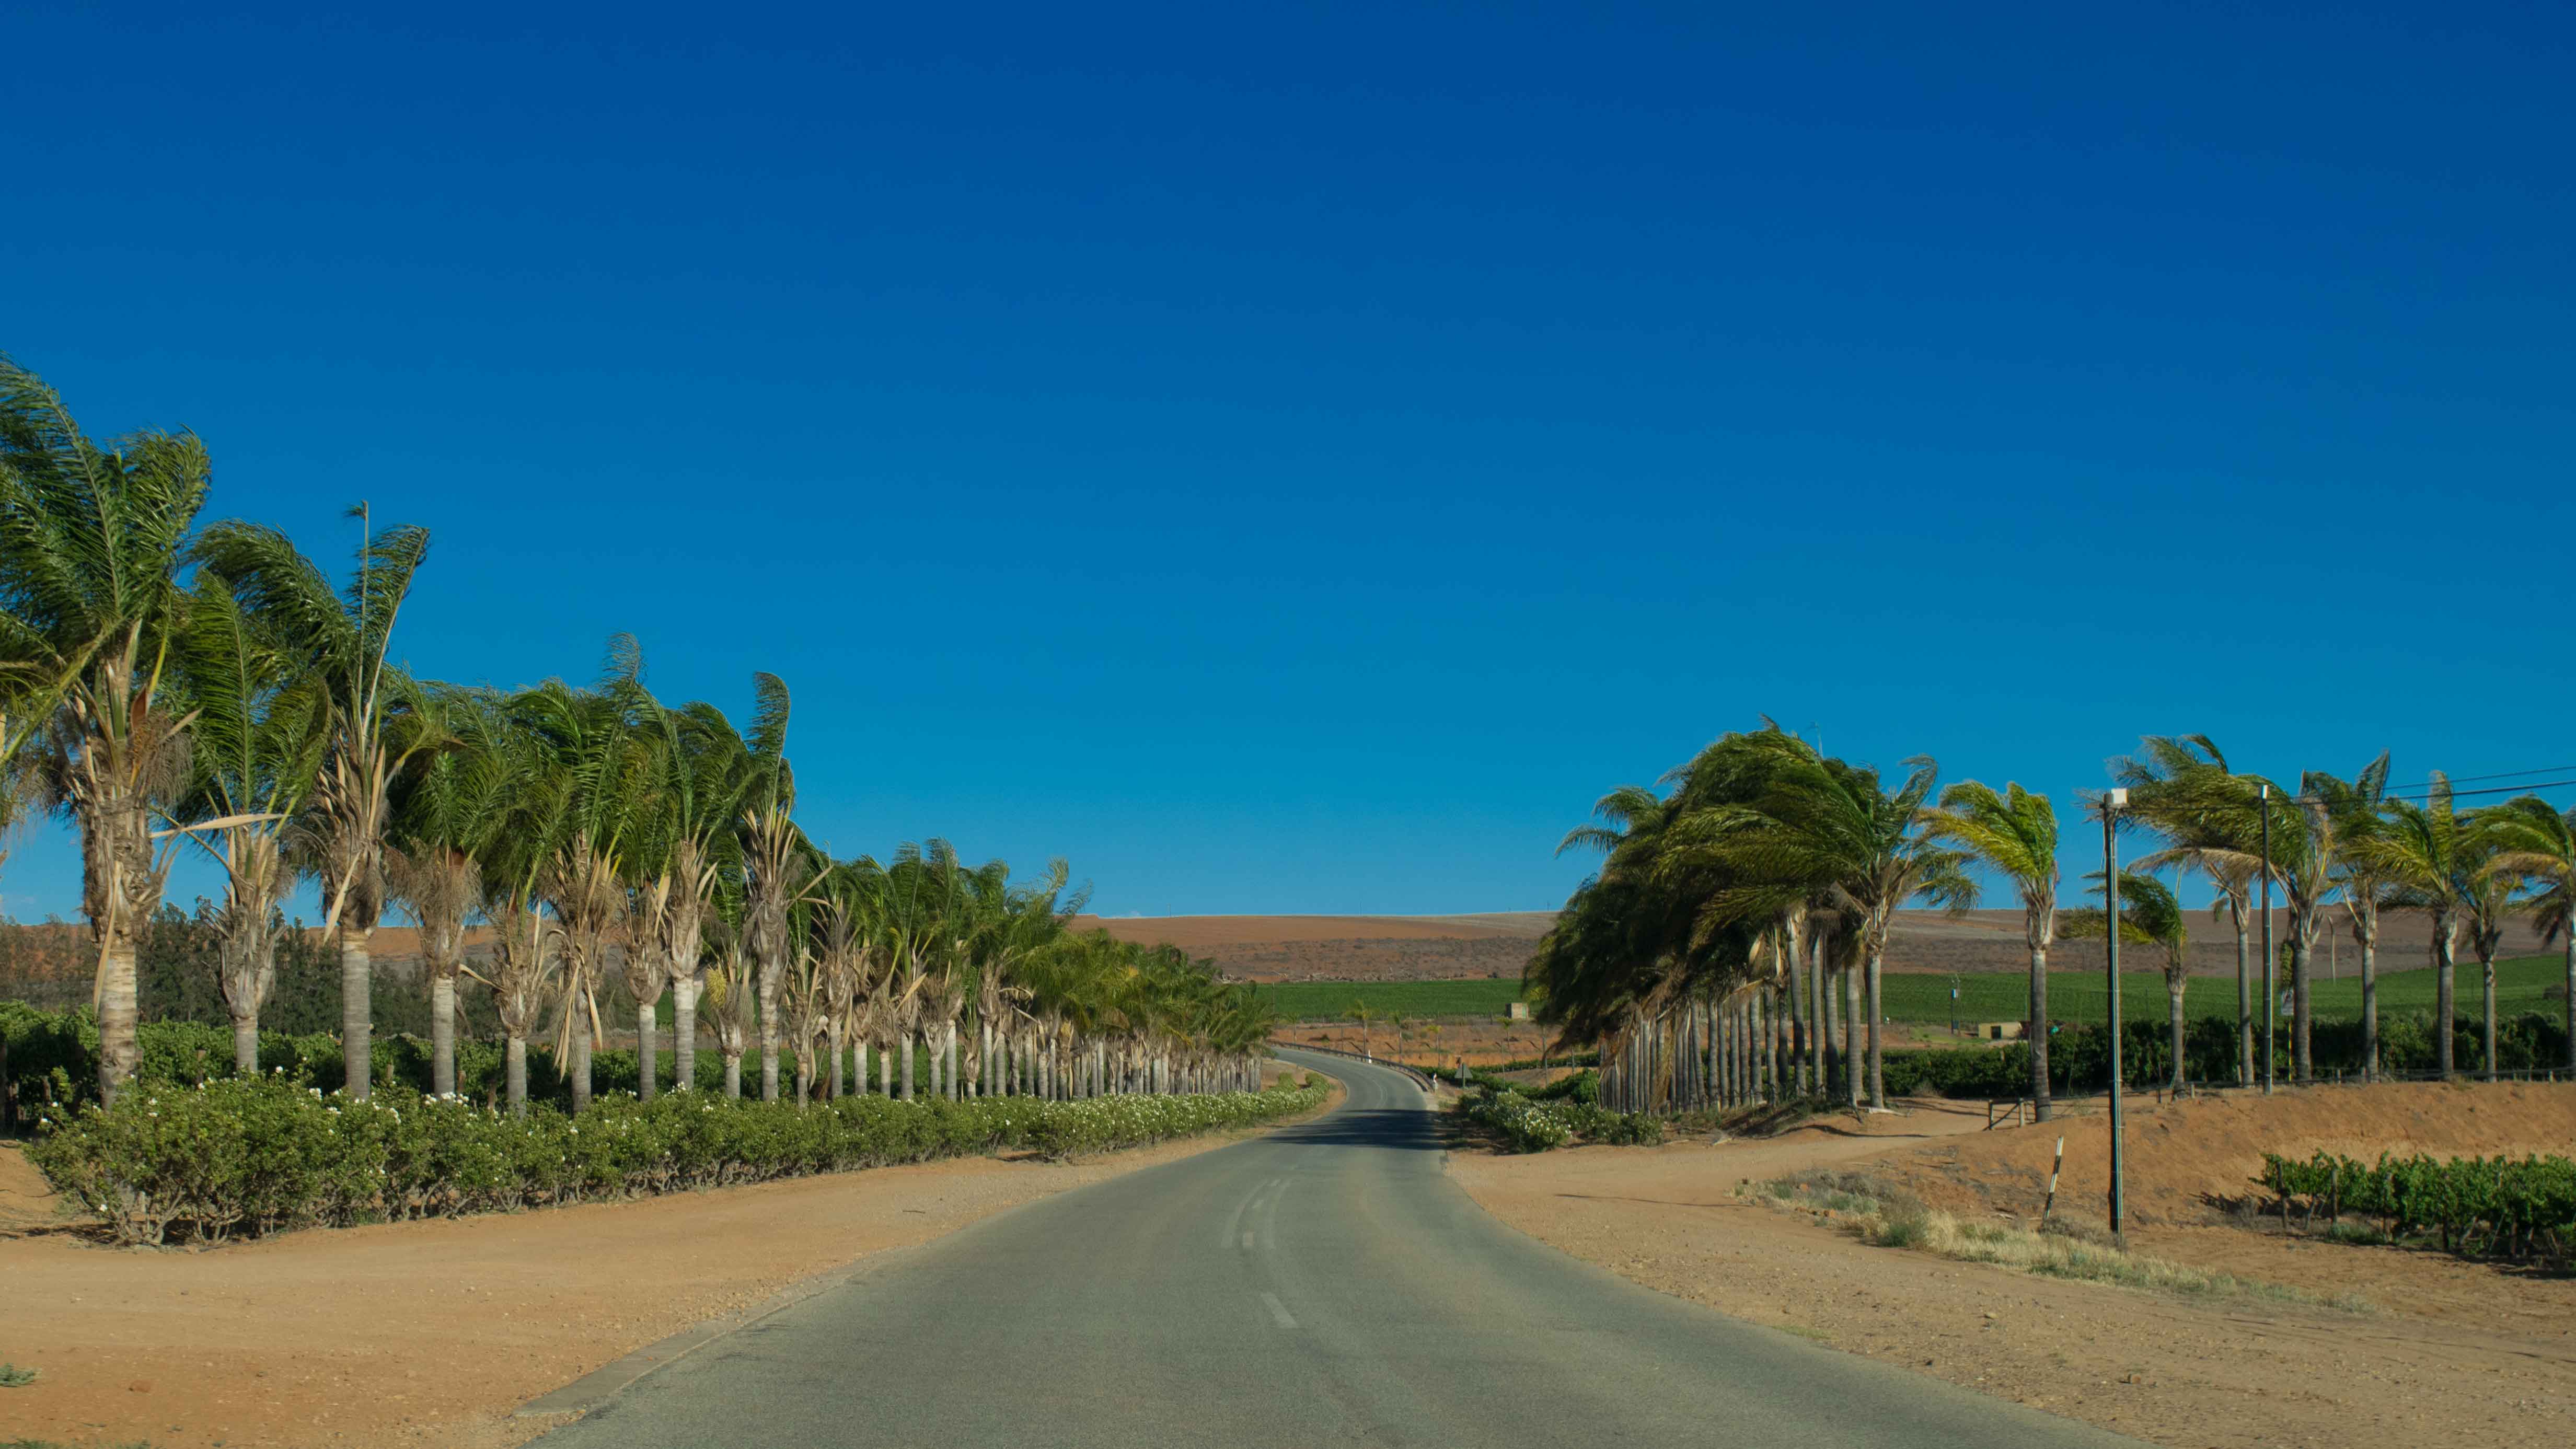 Entre os vinhedos da Olifantsriver Wine Route, West Coast África do Sul.